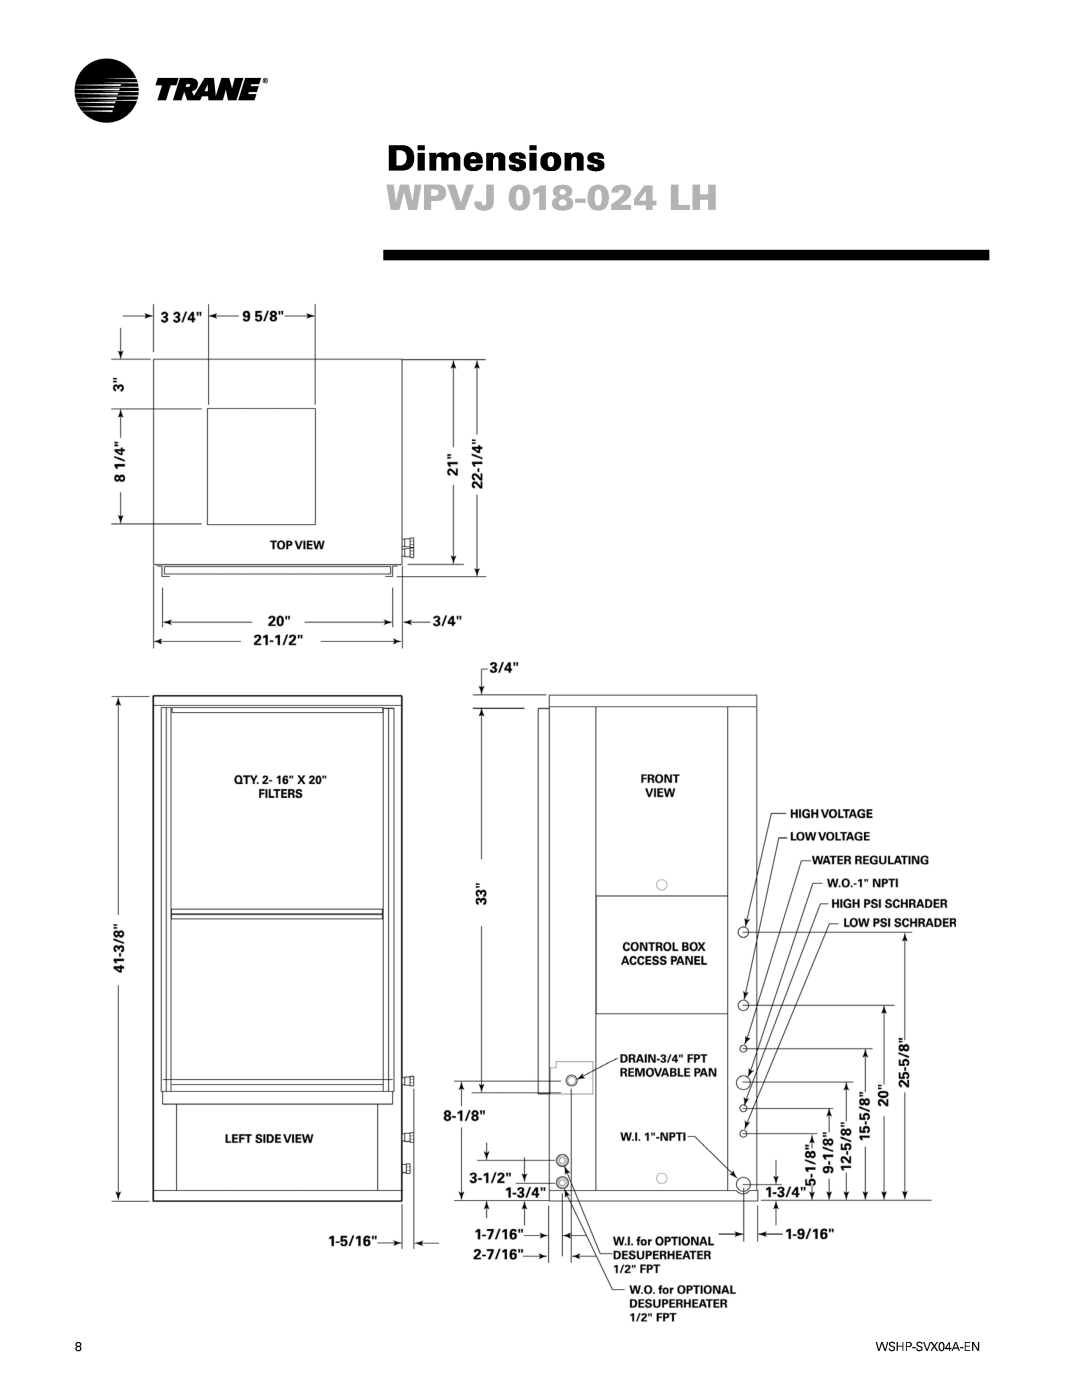 Trane WPHF manual WPVJ 018-024LH, Dimensions 